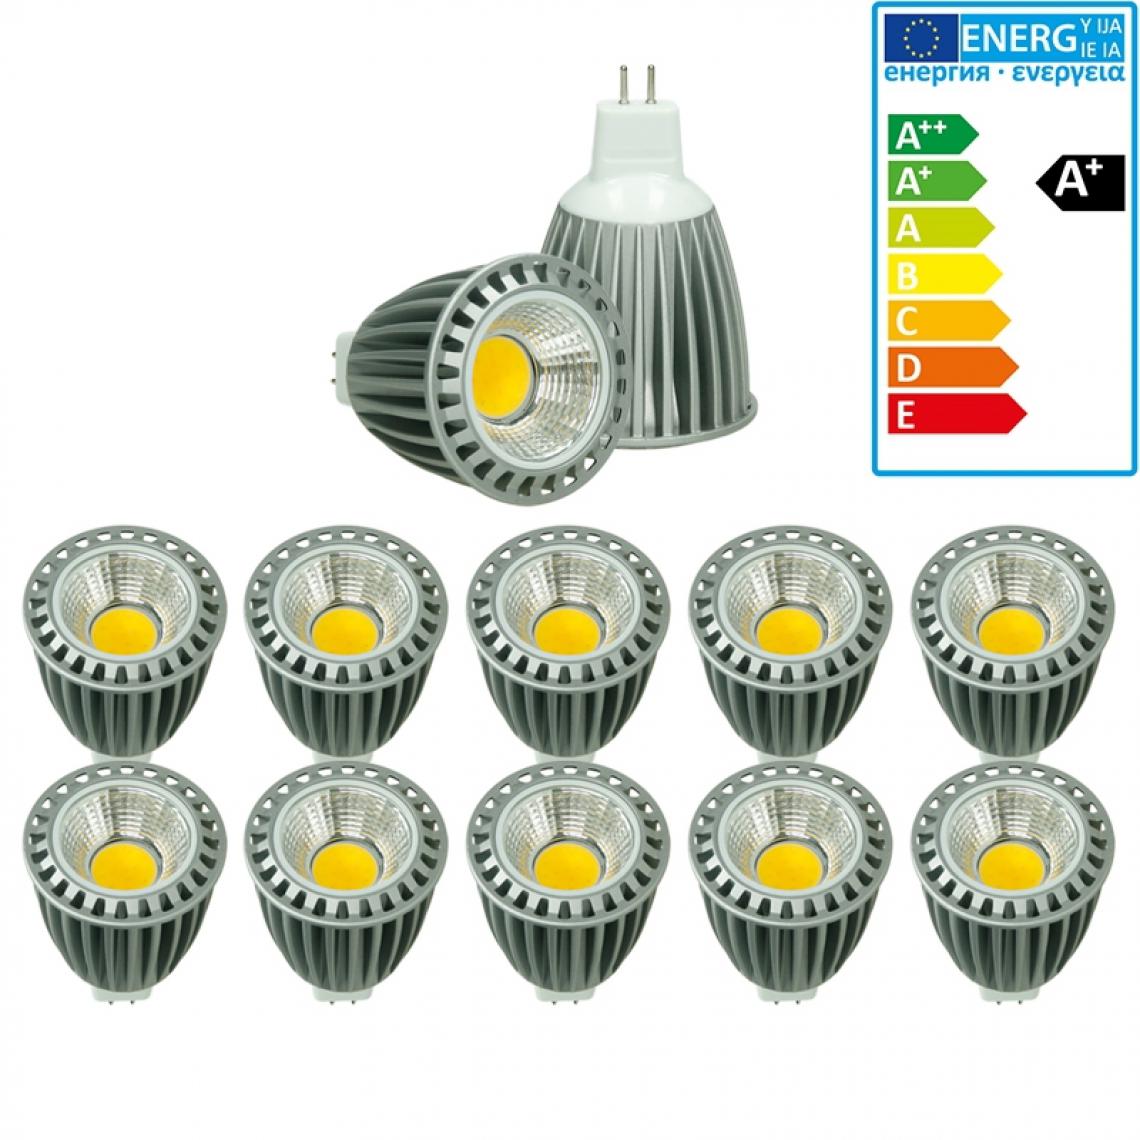 Ecd Germany - ECD Germany 10 x MR16 COB Spot 9W Lampe à économie d'énergie Haute-Puissance 500 lumens remplace l'Ampoule halogène 60W angle de faisceau de 60 ° Blanc Chaud 2800K - Ampoules LED